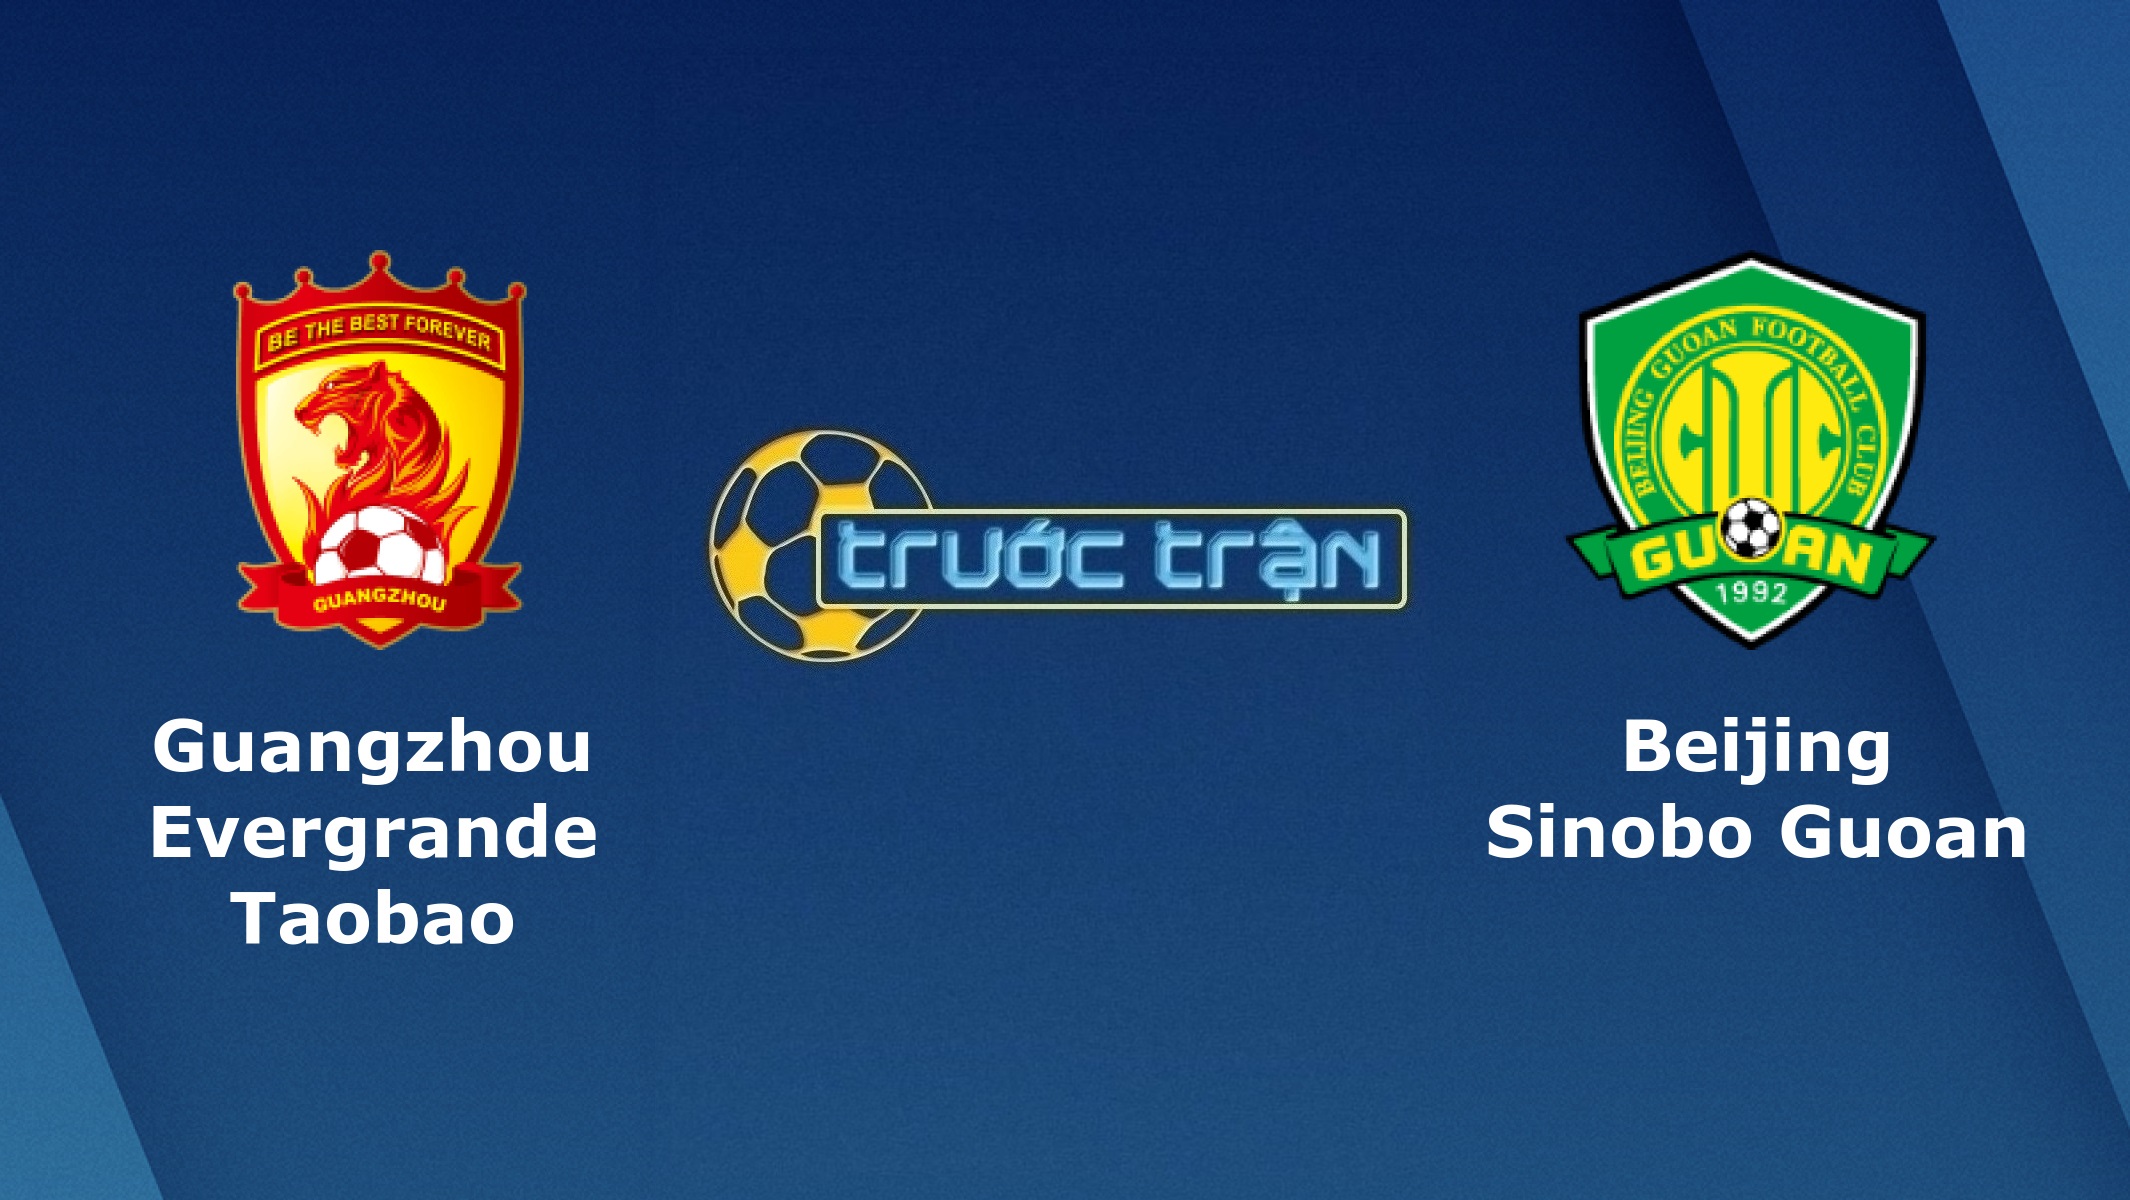 Guangzhou Evergrande vs Beijing Guoan – Tip kèo bóng đá hôm nay – 18h35 02/11/2020